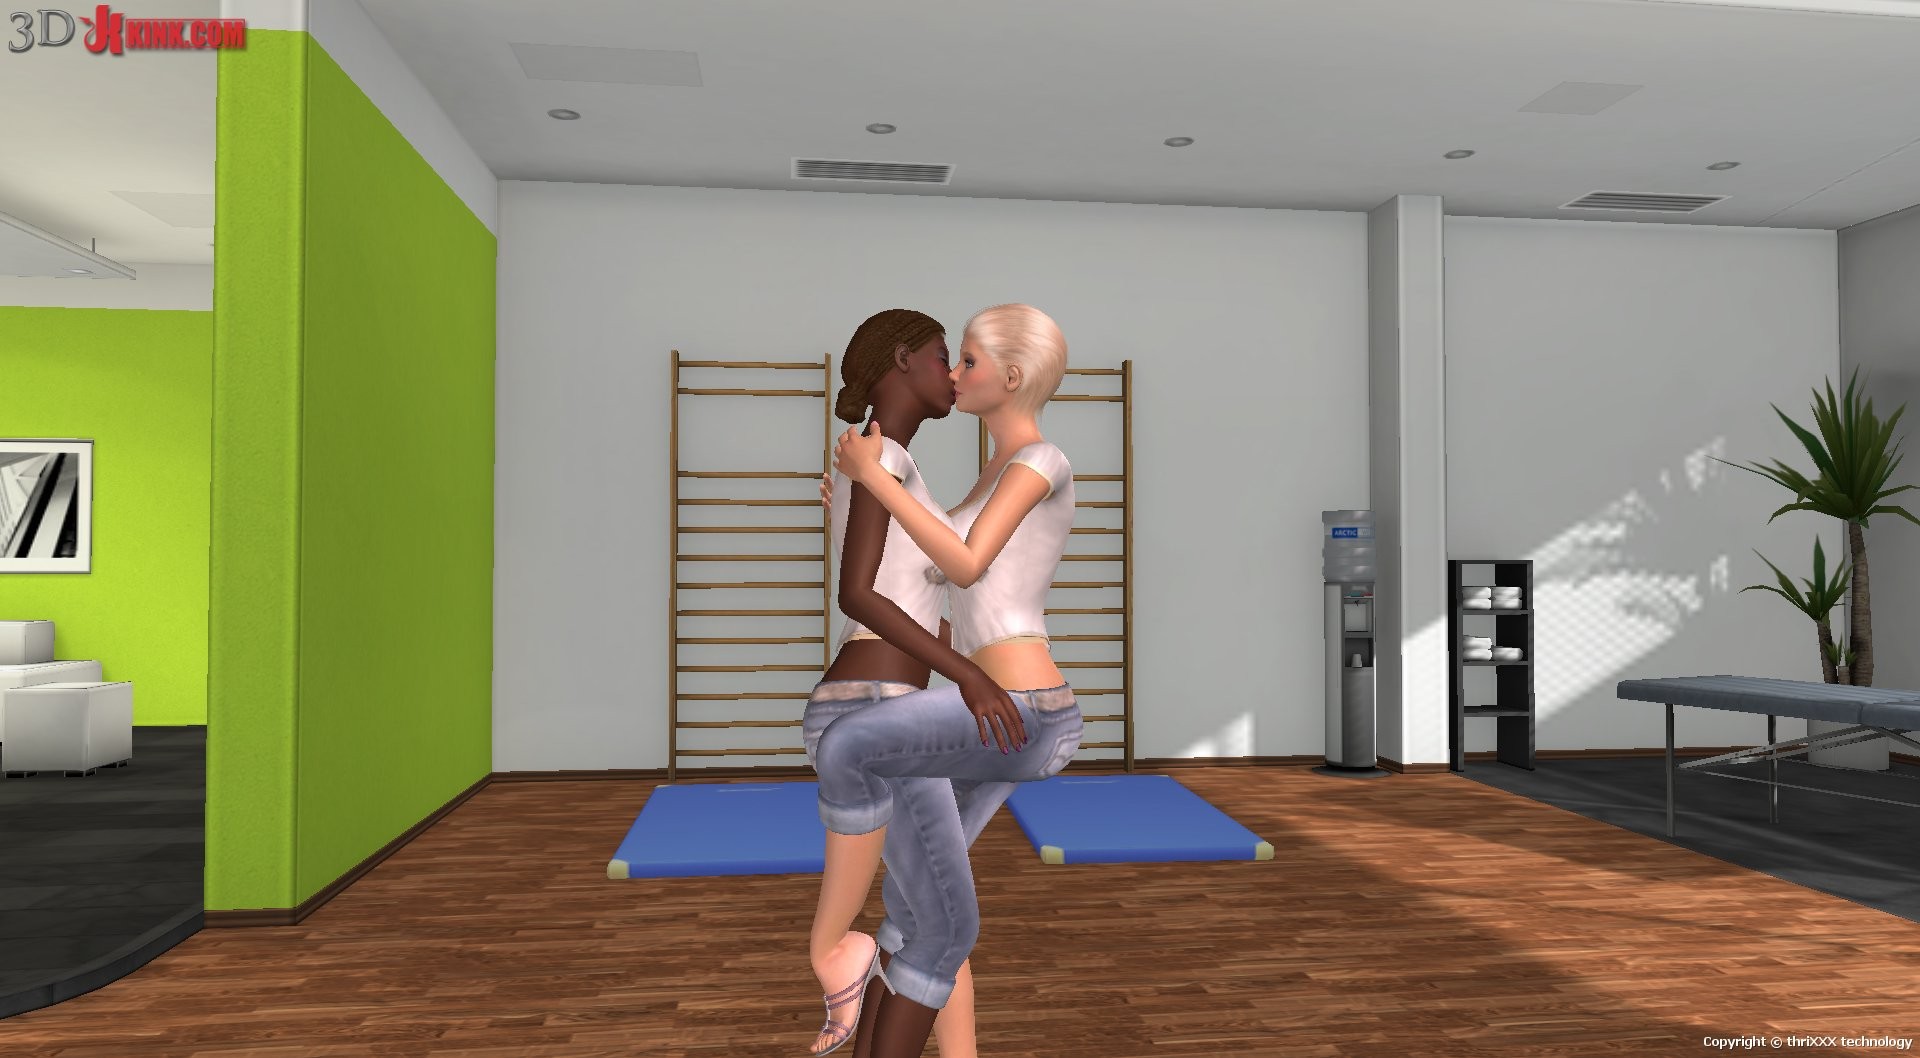 Une bonne action sexuelle bdsm créée dans un jeu de sexe virtuel fétichiste en 3D !
 #69357400